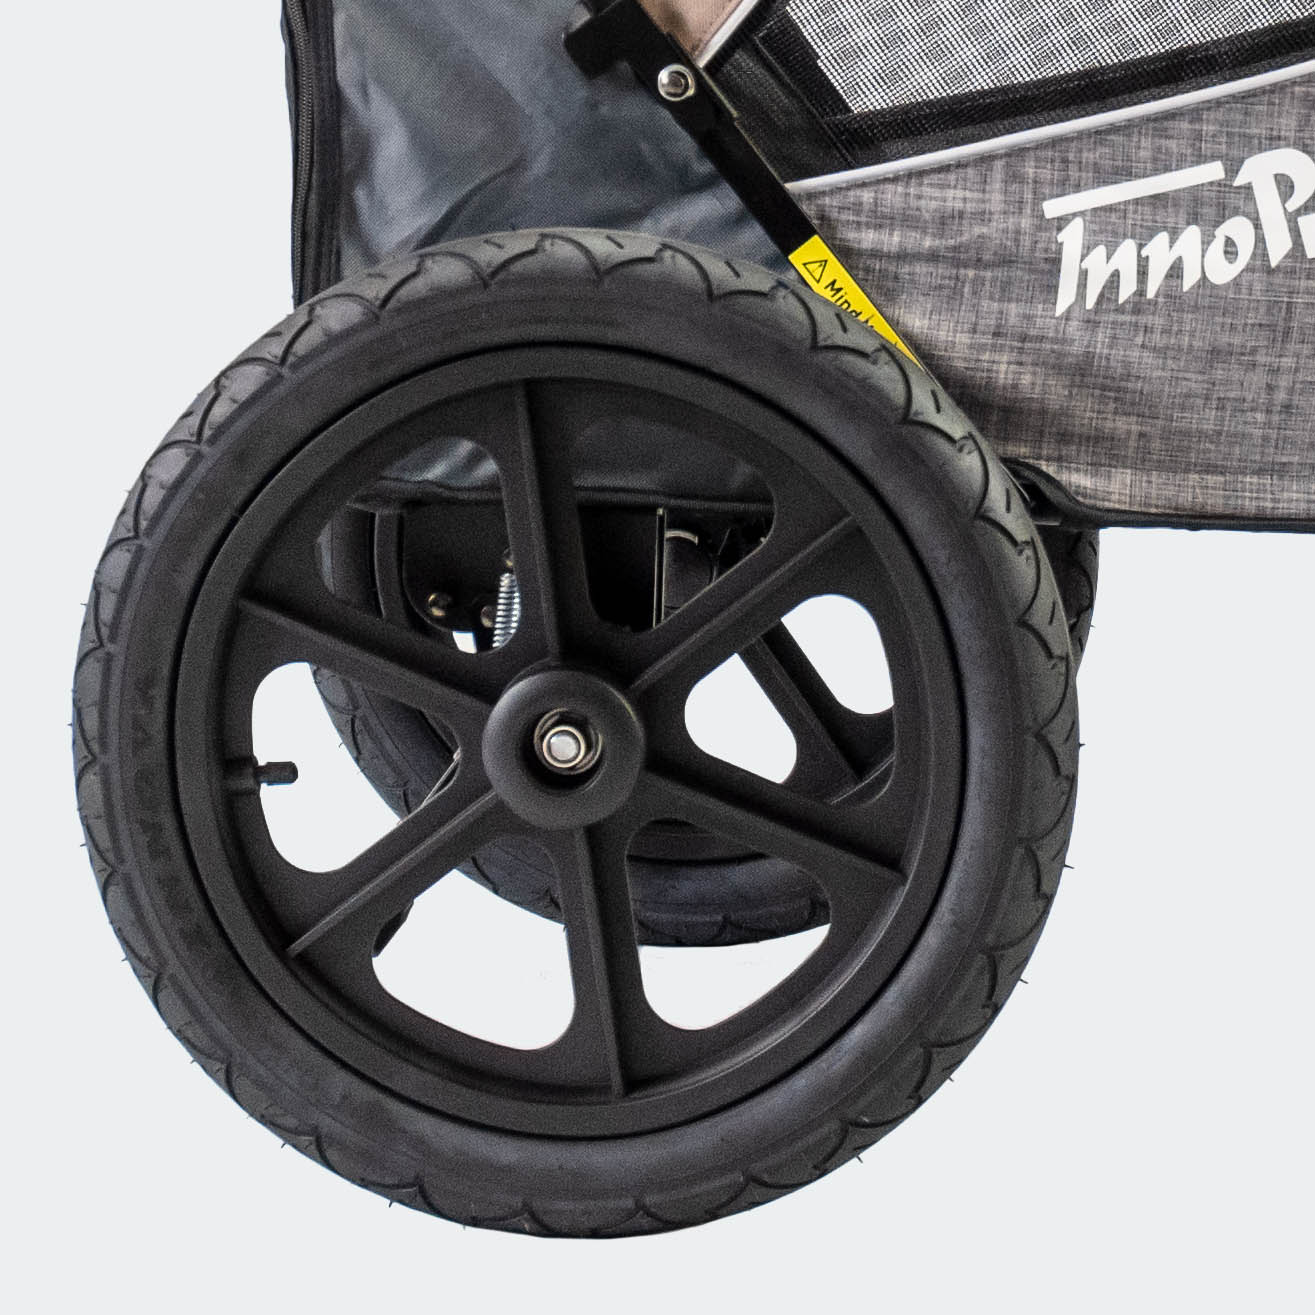 innopet - chariot pour chien avec roues pneumatiques